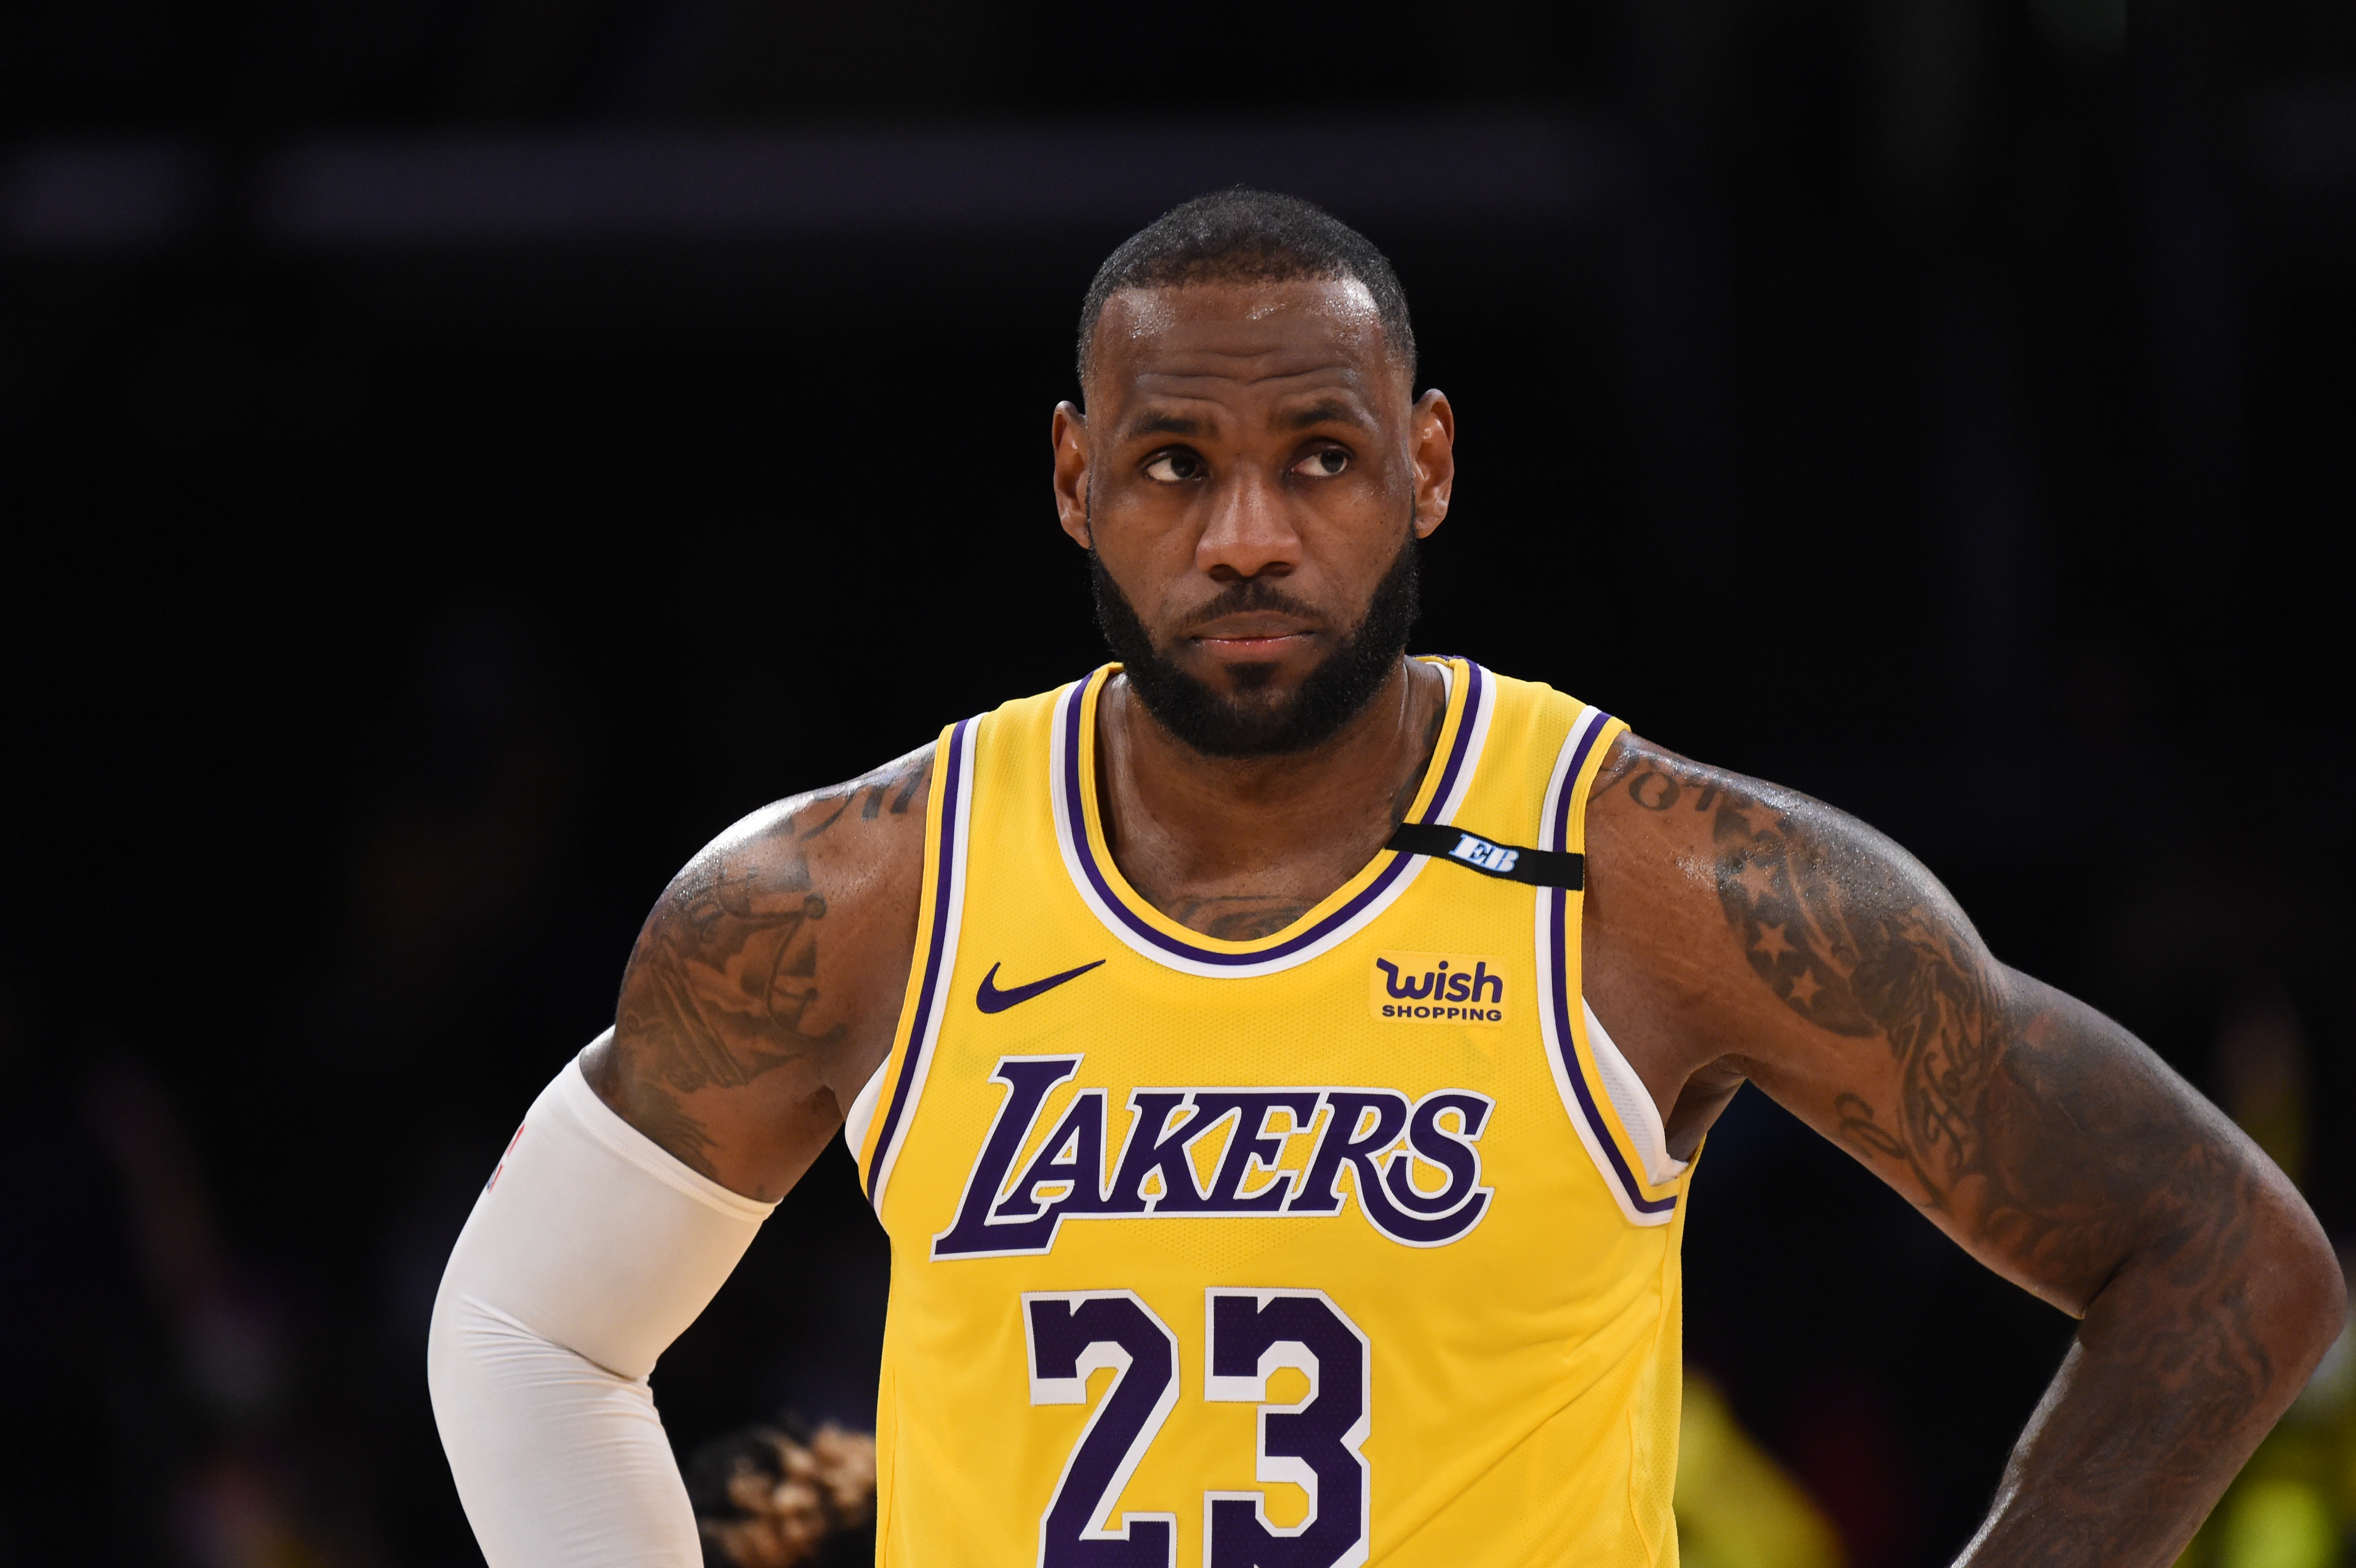 No suspension for Lakers' LeBron James over Covid protocol breach